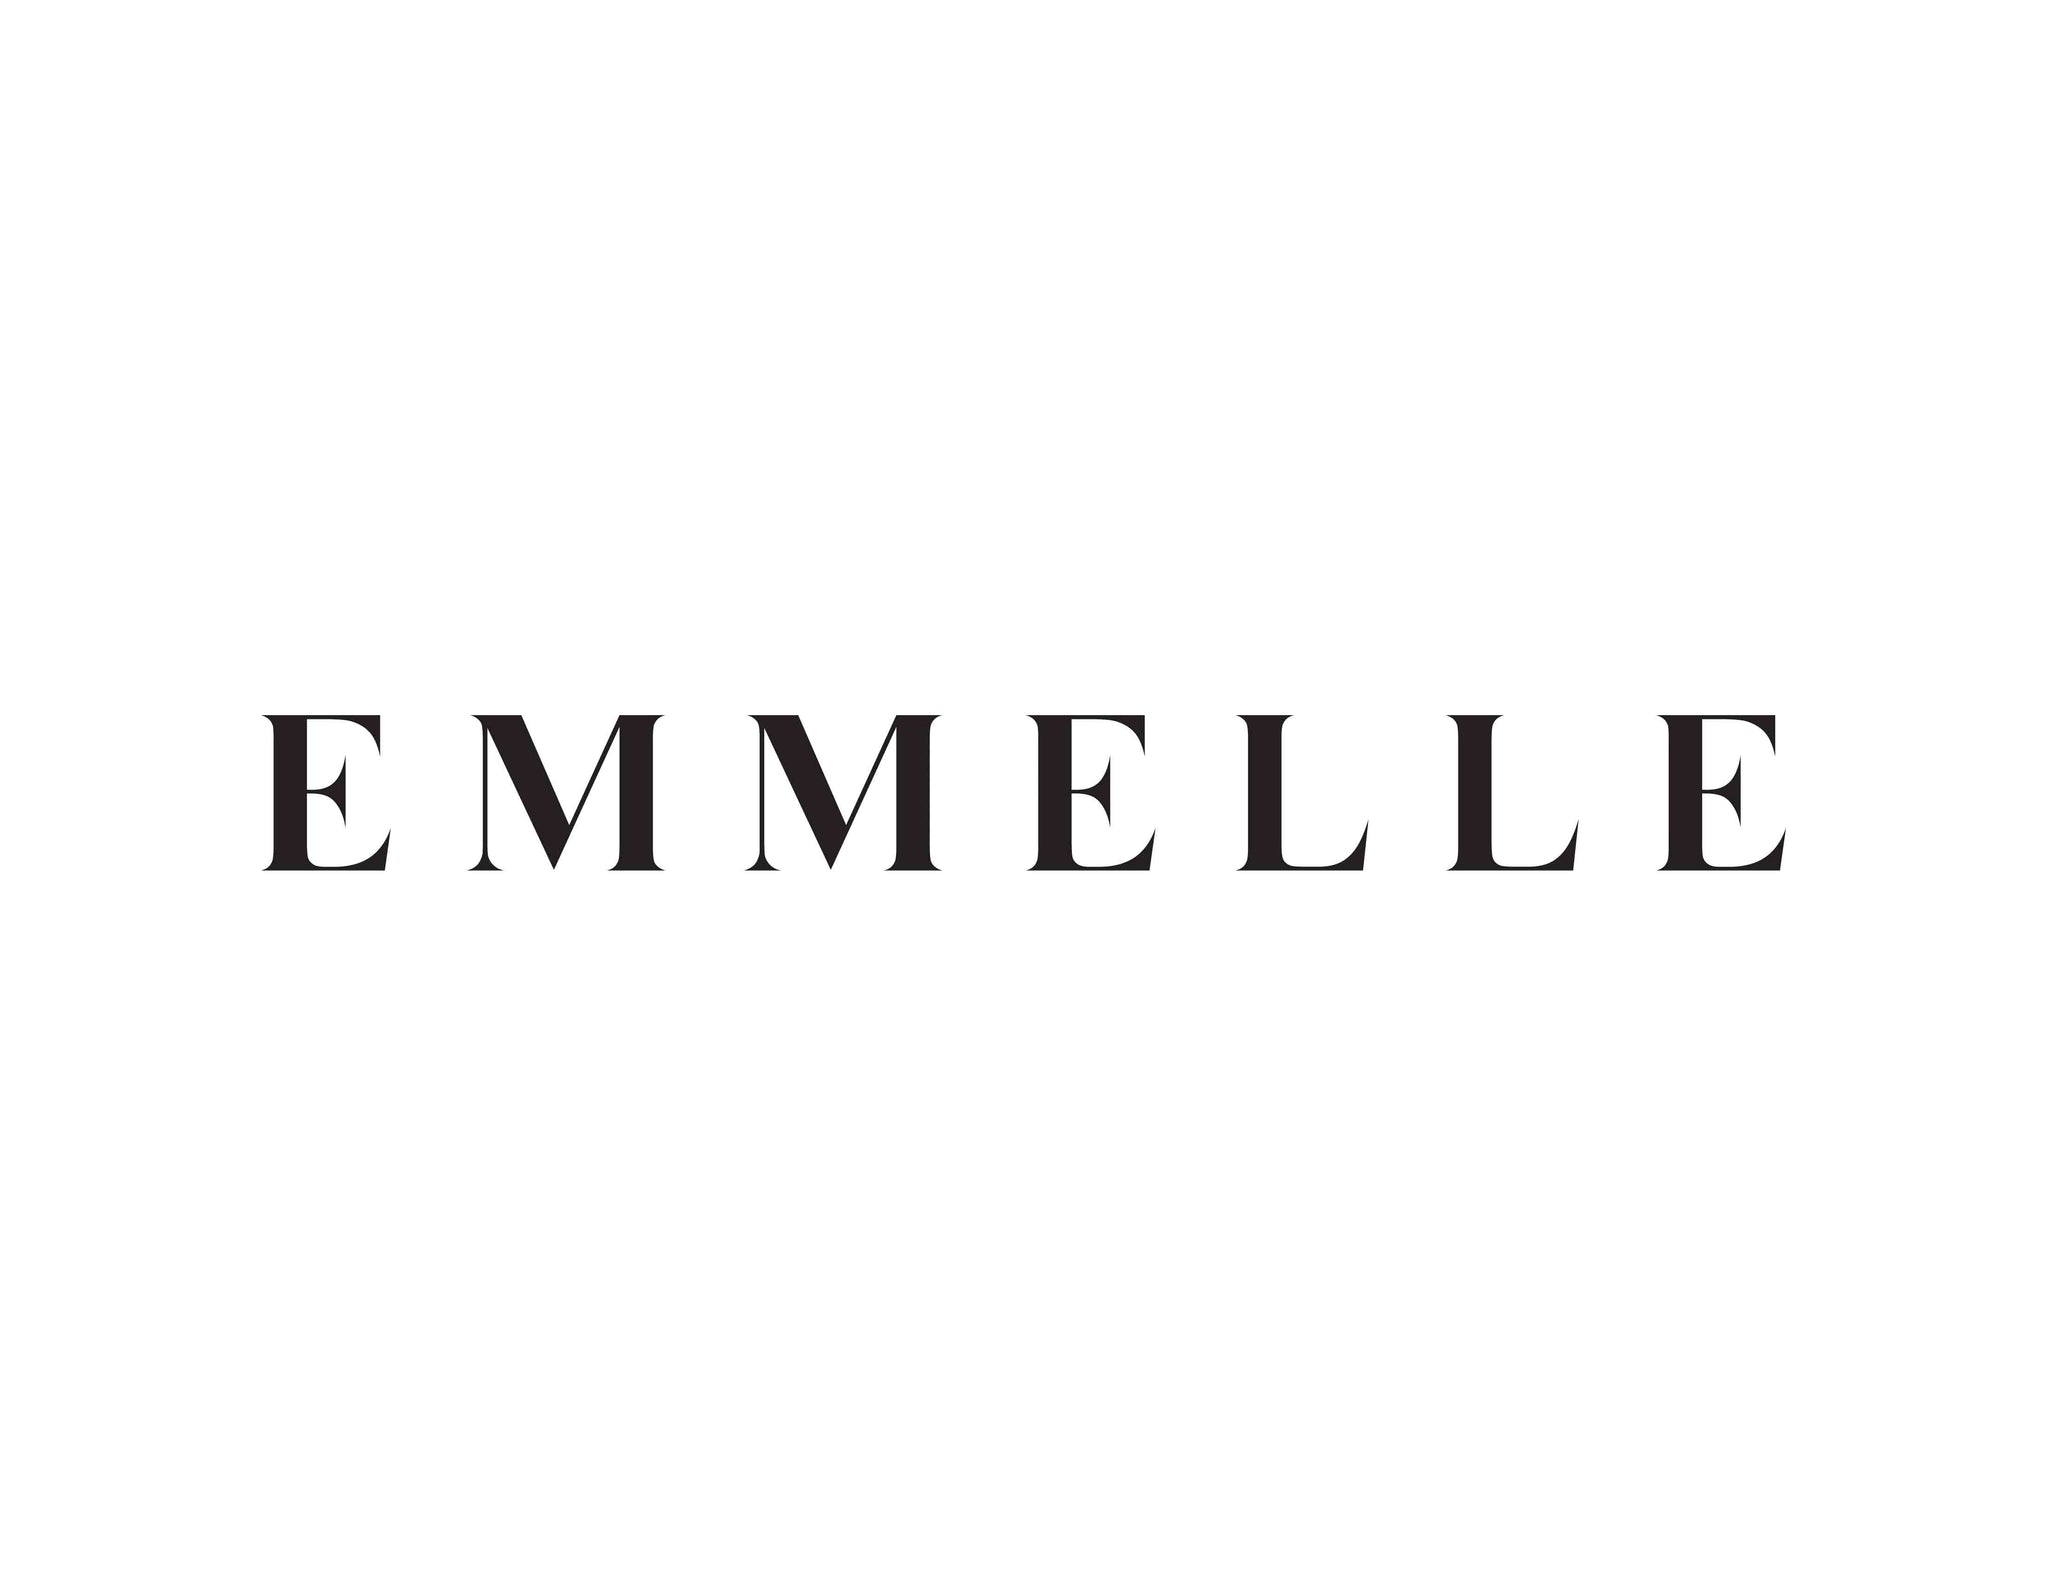 Designer Grade With Emmelle